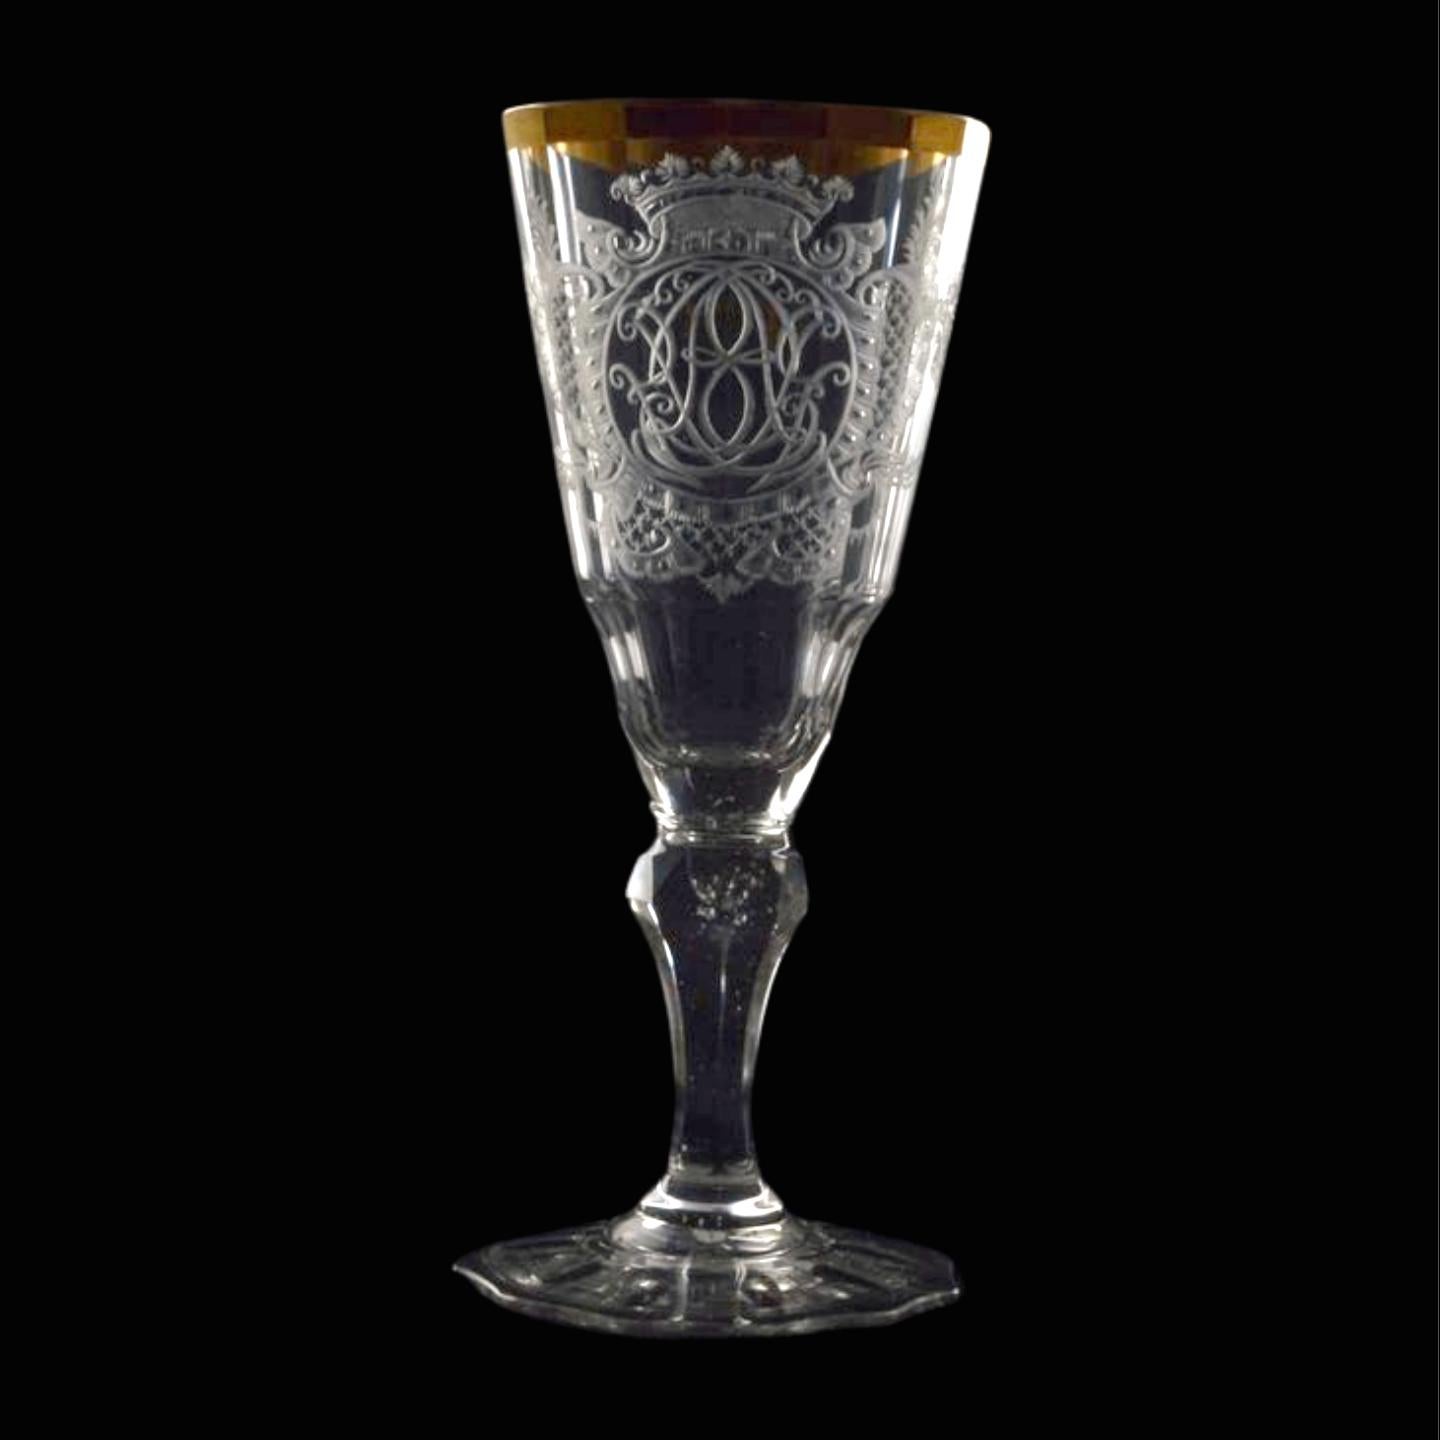 Ein wunderschönes konisches Weinglas mit aufwändiger Gravur, die ein Monogramm unter einer Krone und einen Goldrand umfasst.


Warmbrunner Glas, auch Warmbrunner Glas genannt, bezeichnet eine Art von Glaswaren, die ihren Ursprung in der Region